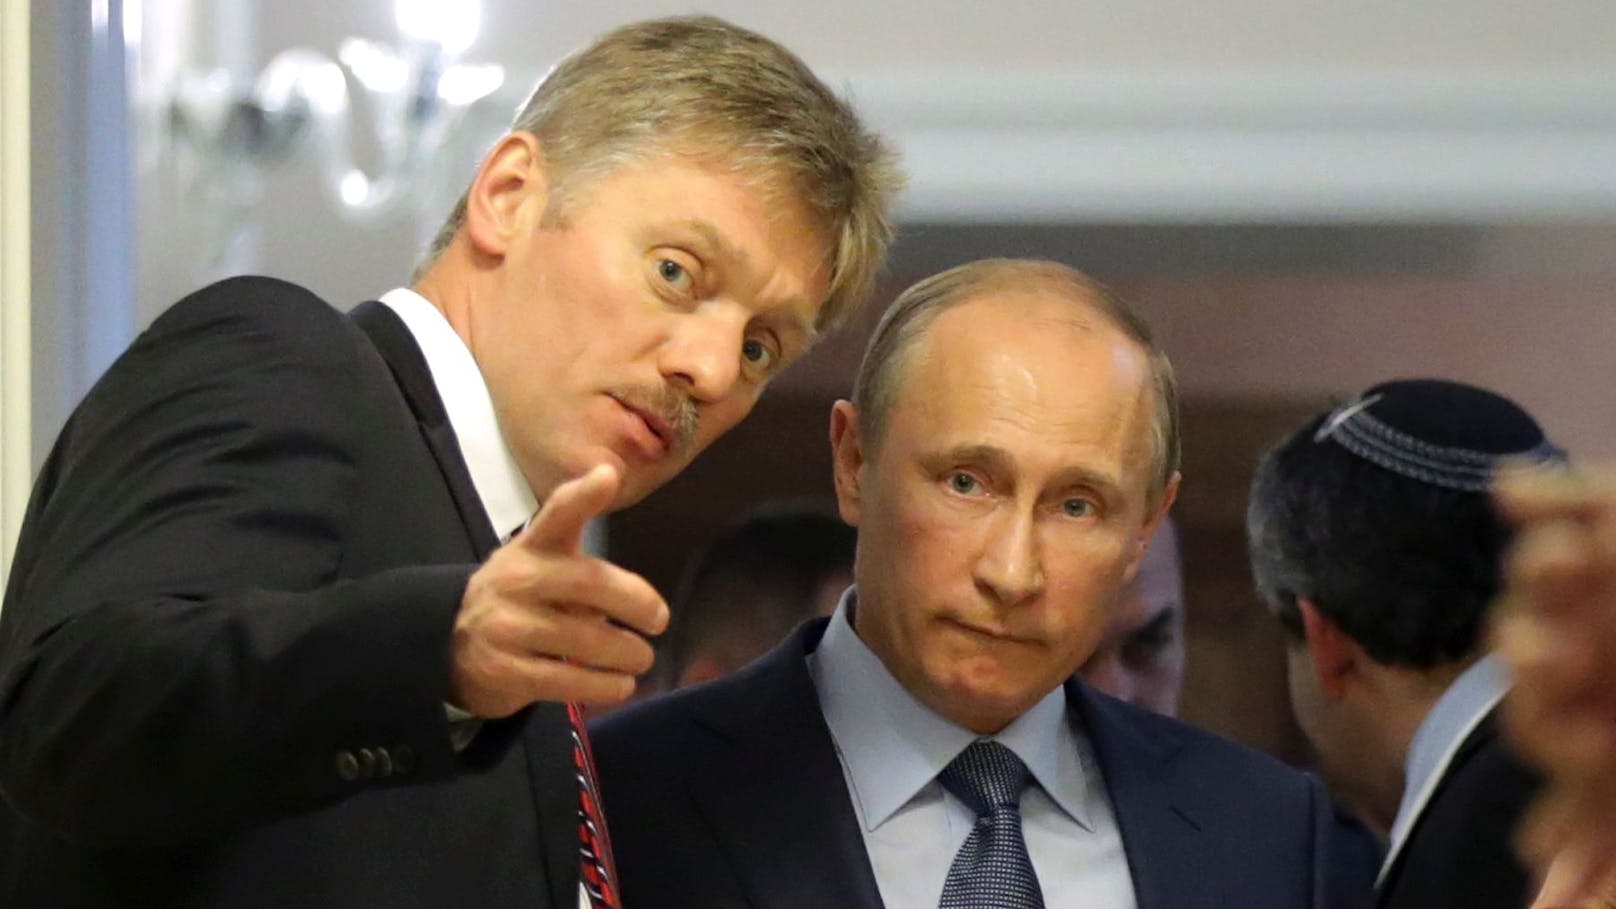 Dmitri Peskow ist bereits seit vielen Jahren Pressesprecher des Kremls und gilt als Vertrauter Wladimir Putins. Im Bild beide im Jahr 2013.